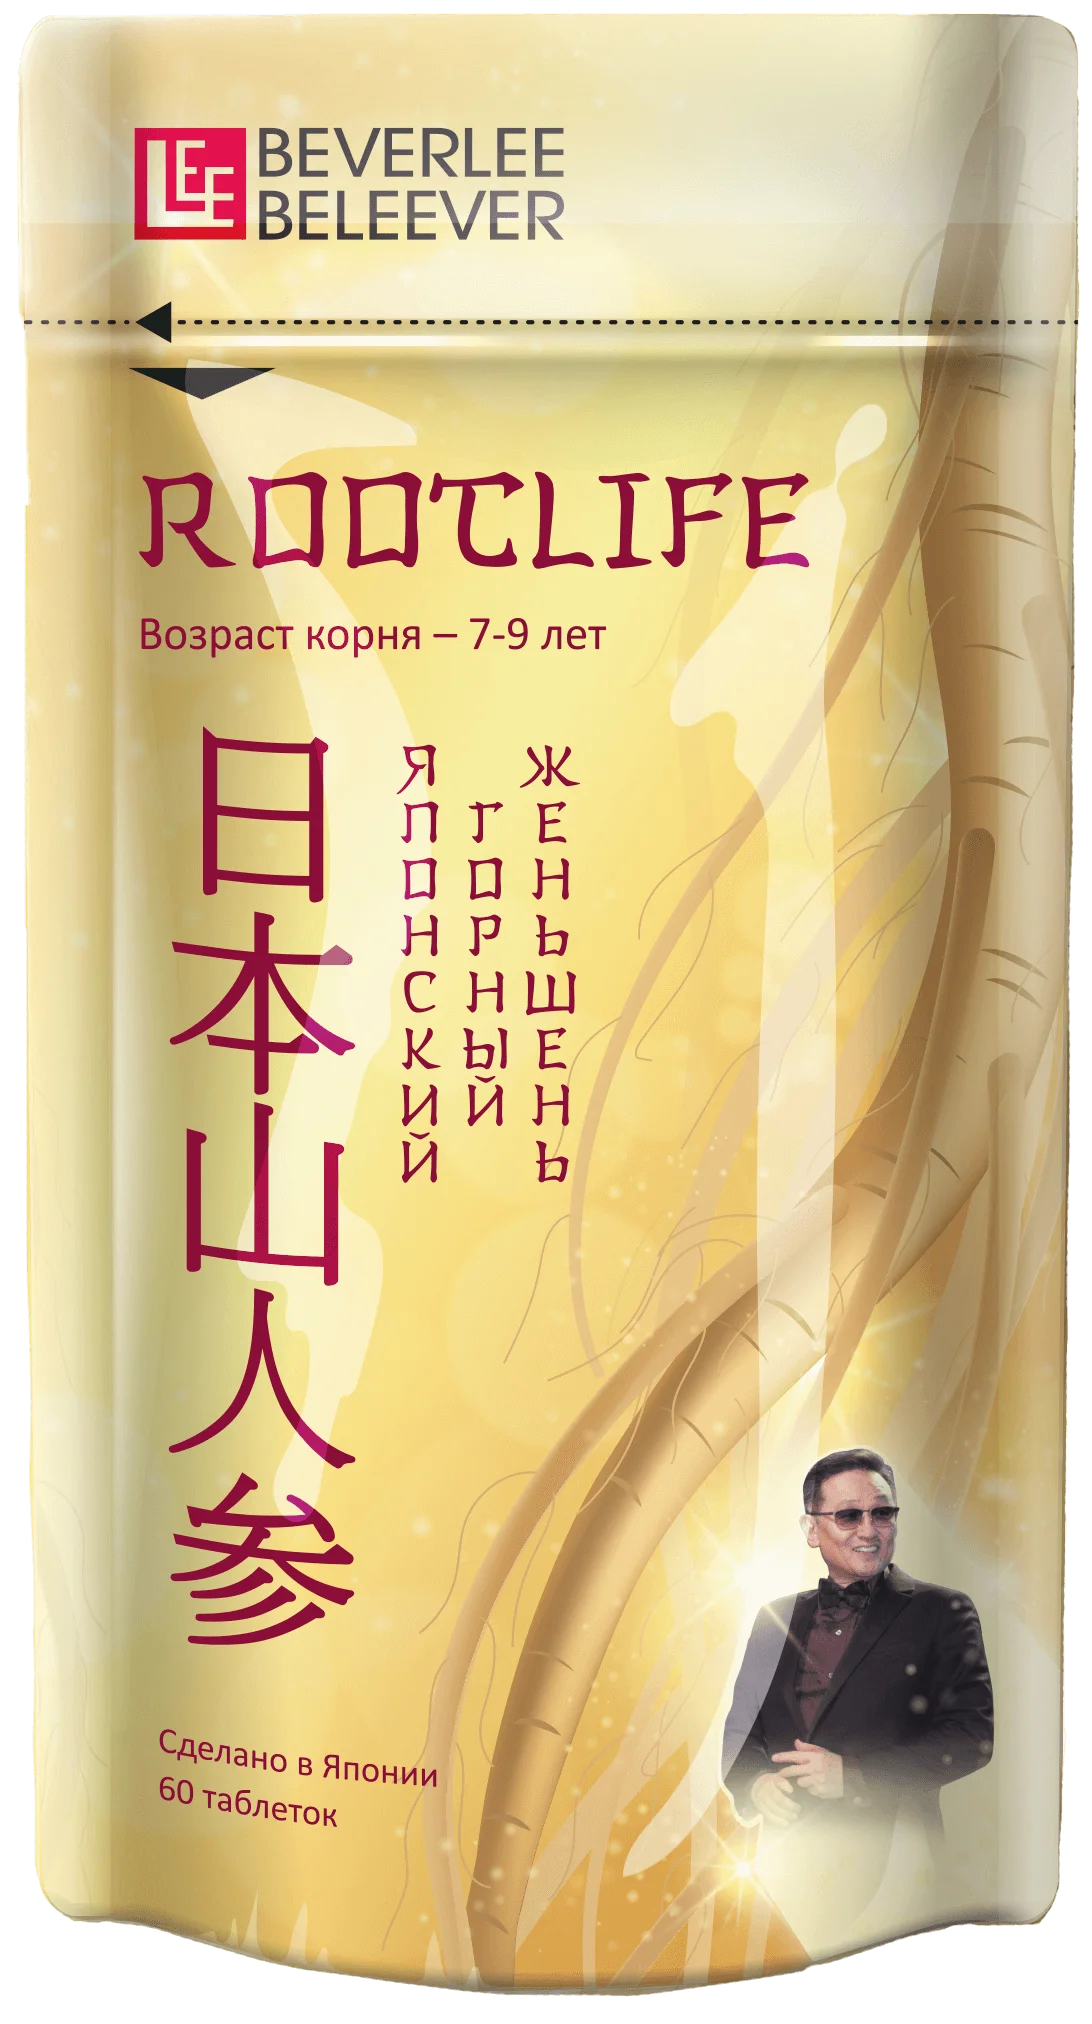 Японский горный женьшень RootLife (РутЛайф), Изготовитель: Shiseido Pharmaceutical Co., Ltd., Япония. Купить в Дагестане, Махачкале по официальной цене компании BEVERLee — beLEEver (Беверли - Беливер)